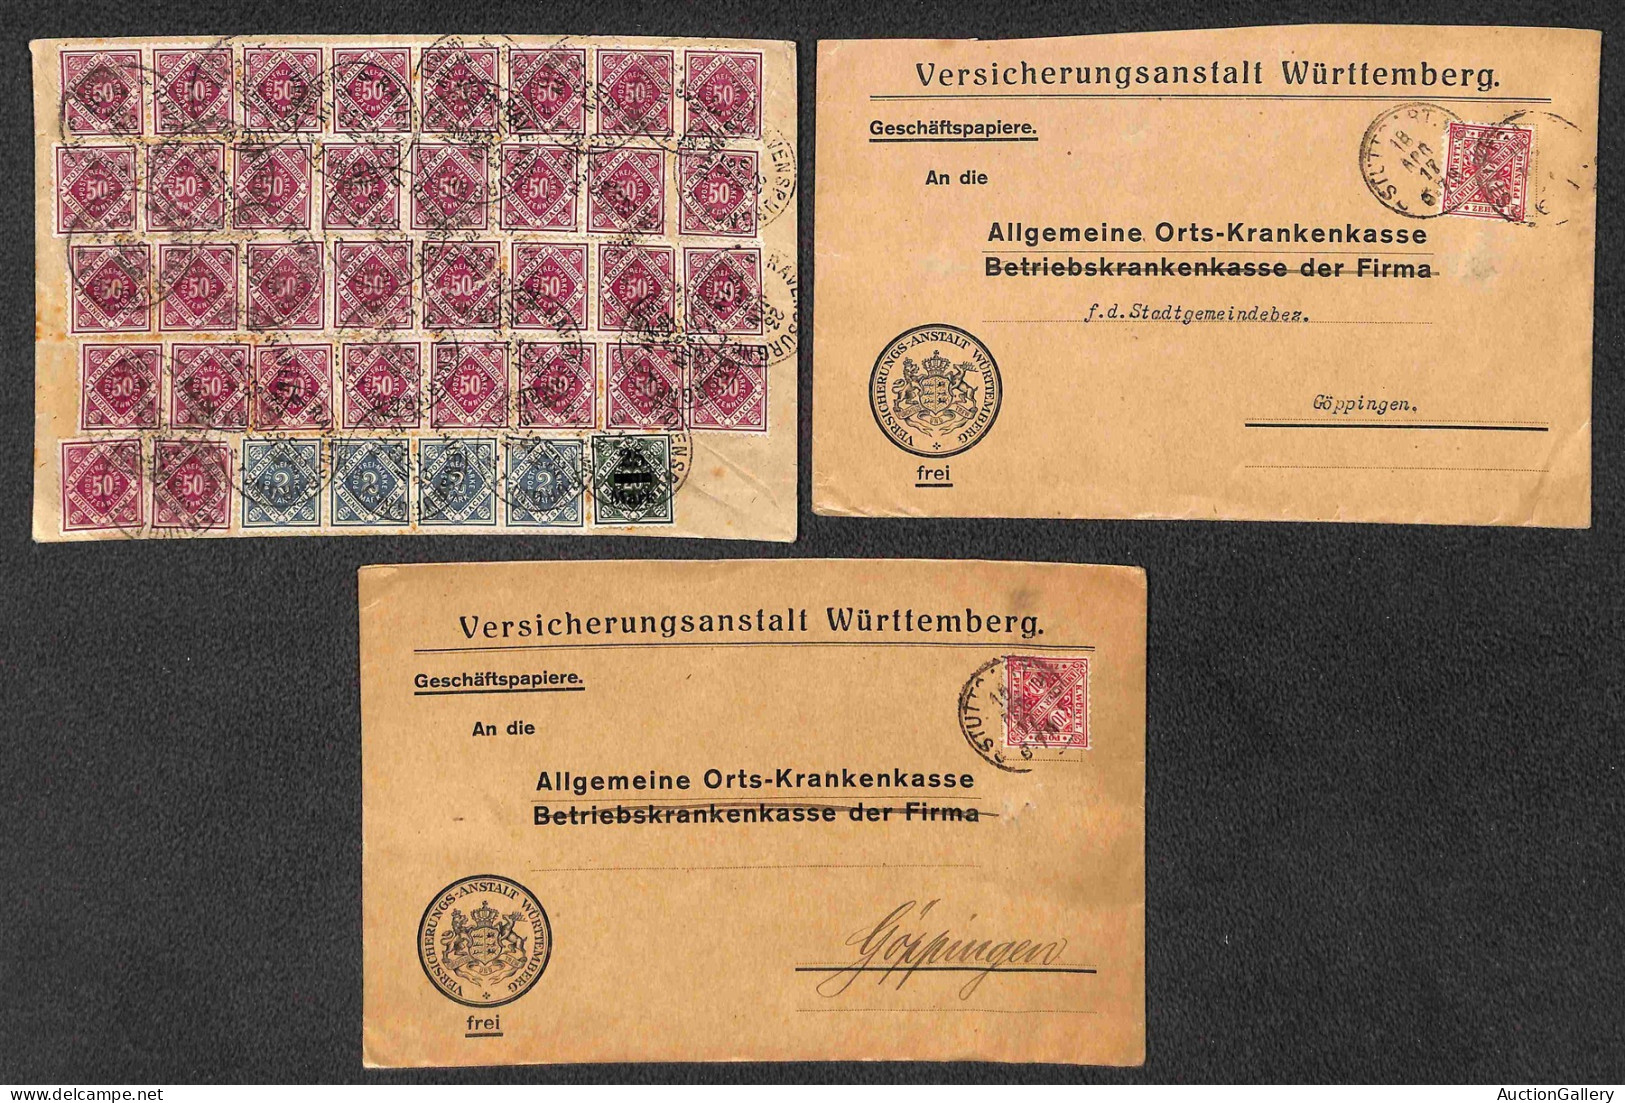 Lotti e Collezioni - Europa e Oltremare - GERMANIA/WURTTEMBERG - 1865/1923 - Insieme di 40 oggetti postali del periodo c